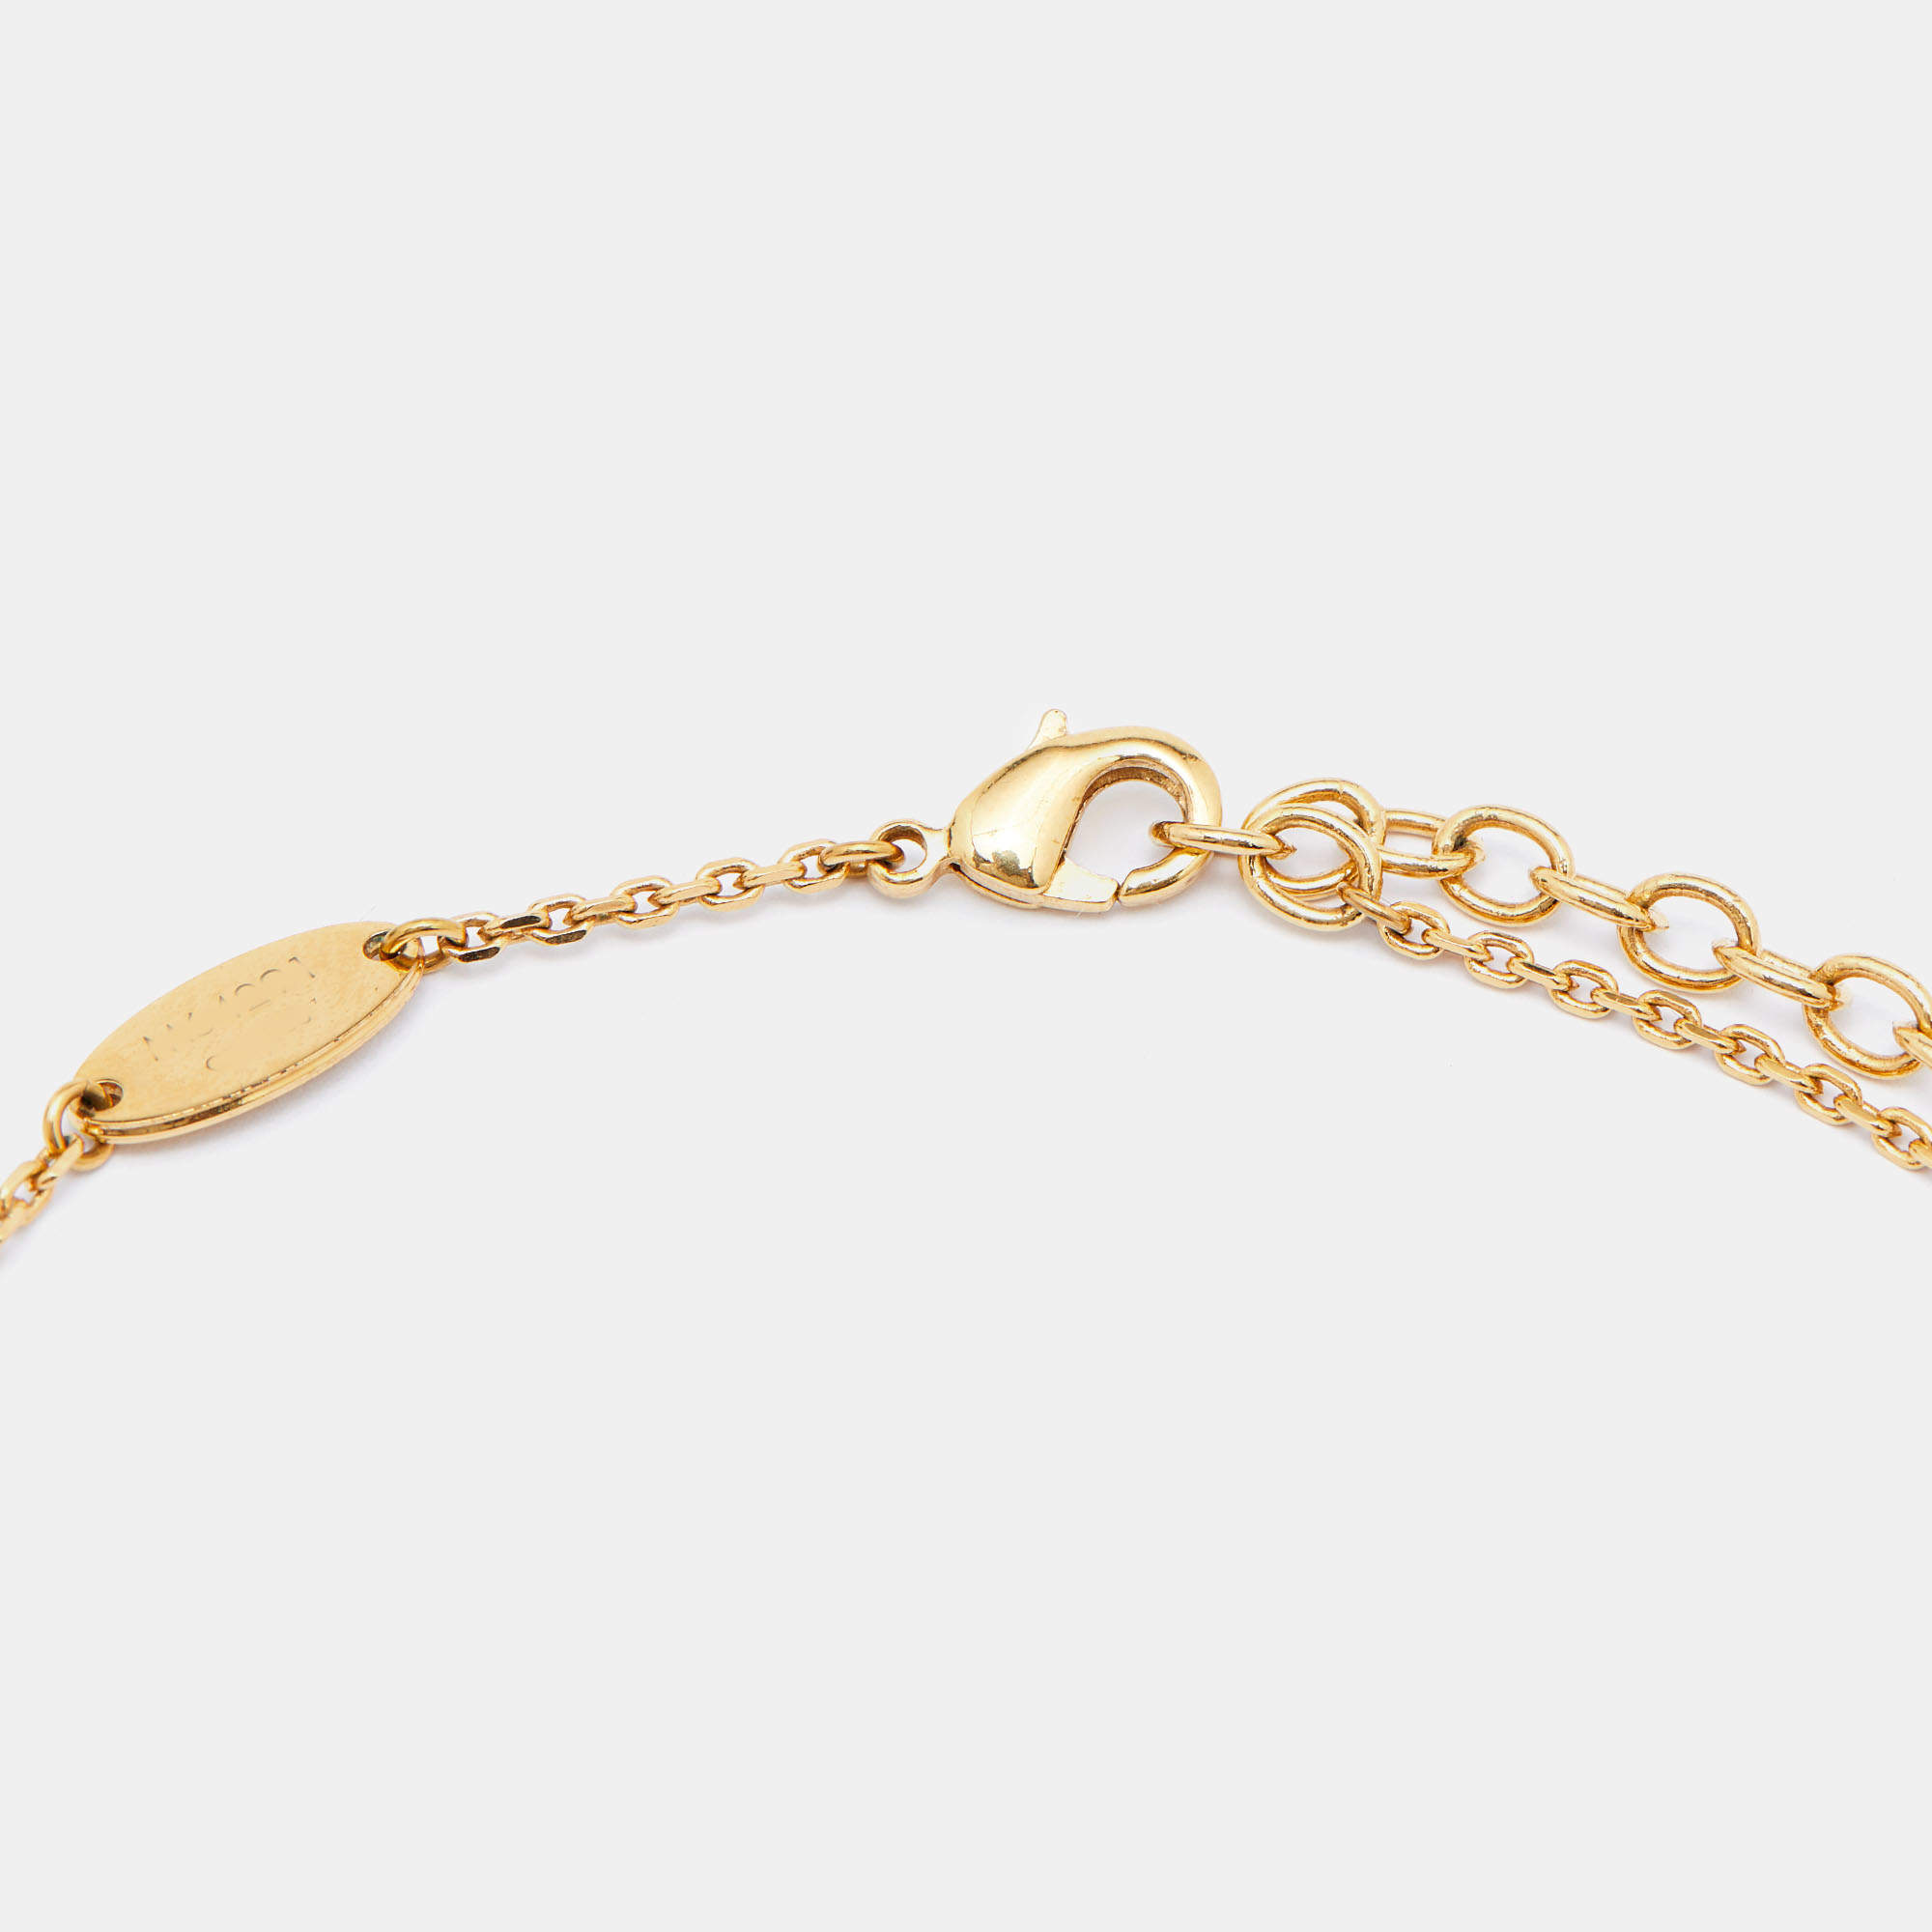 Louis Vuitton Gold Tone Collier Logo Angel Pendant Necklace Louis Vuitton